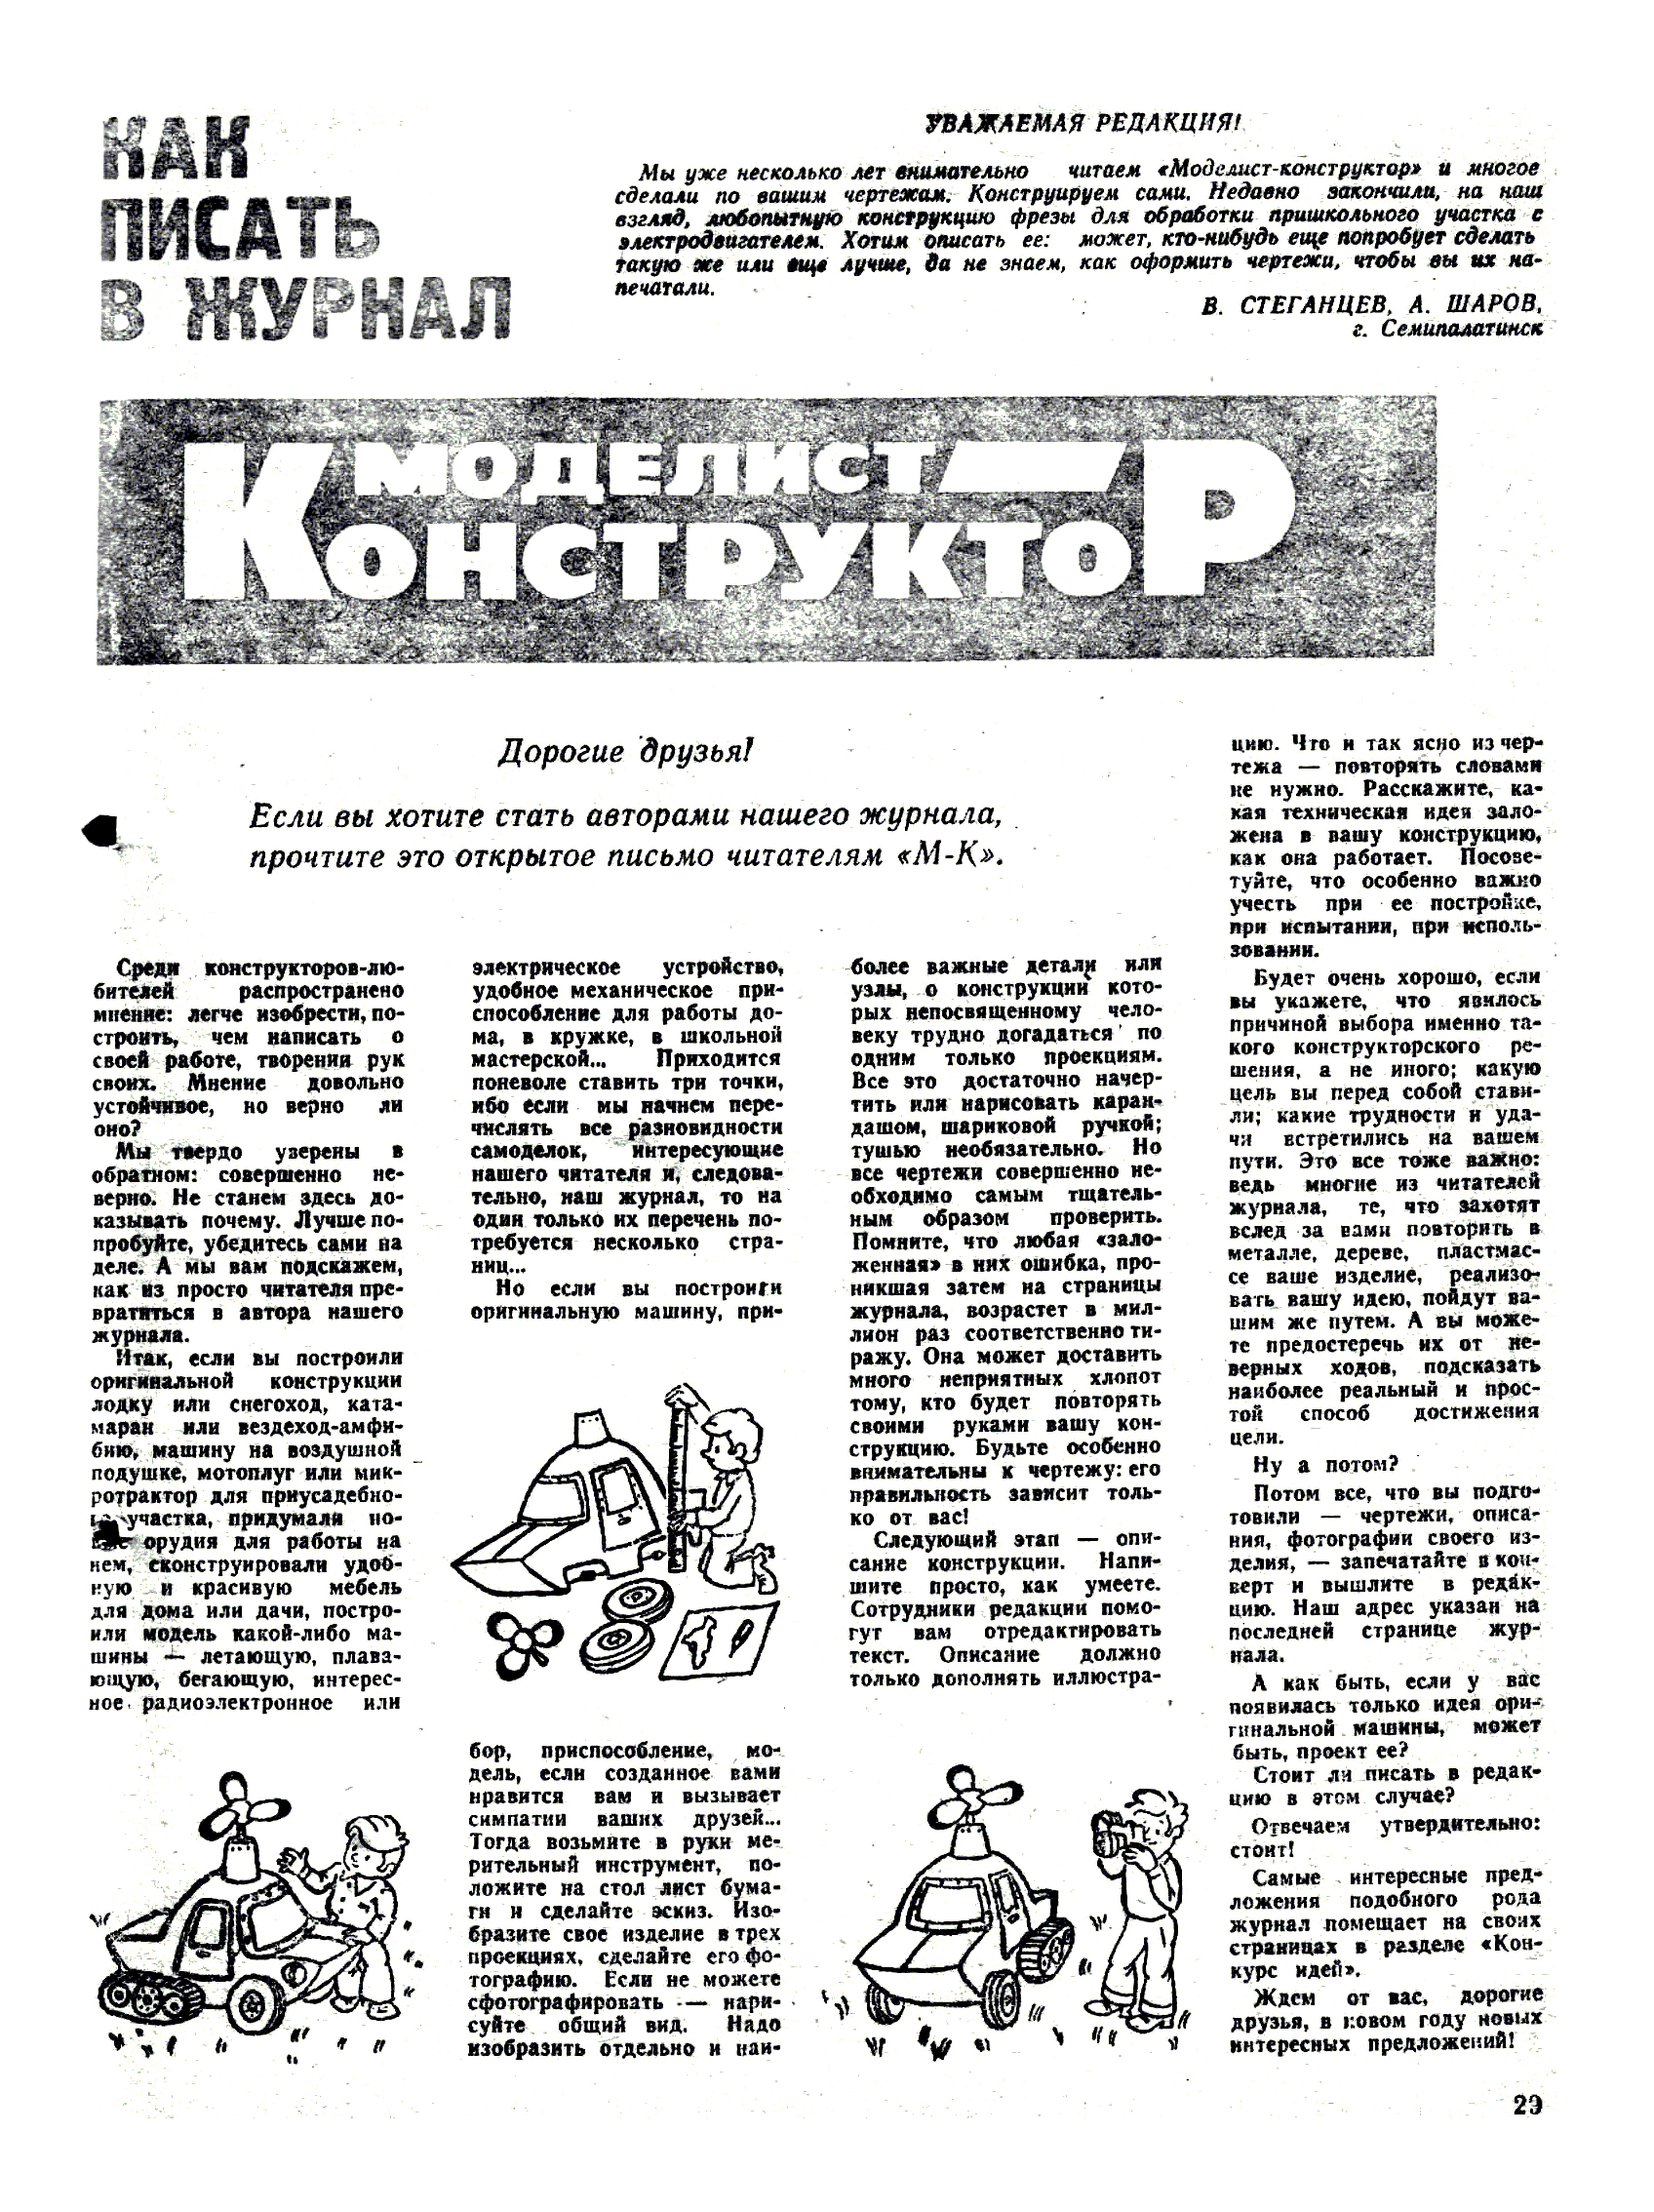 МК 12, 1983, 29 c.